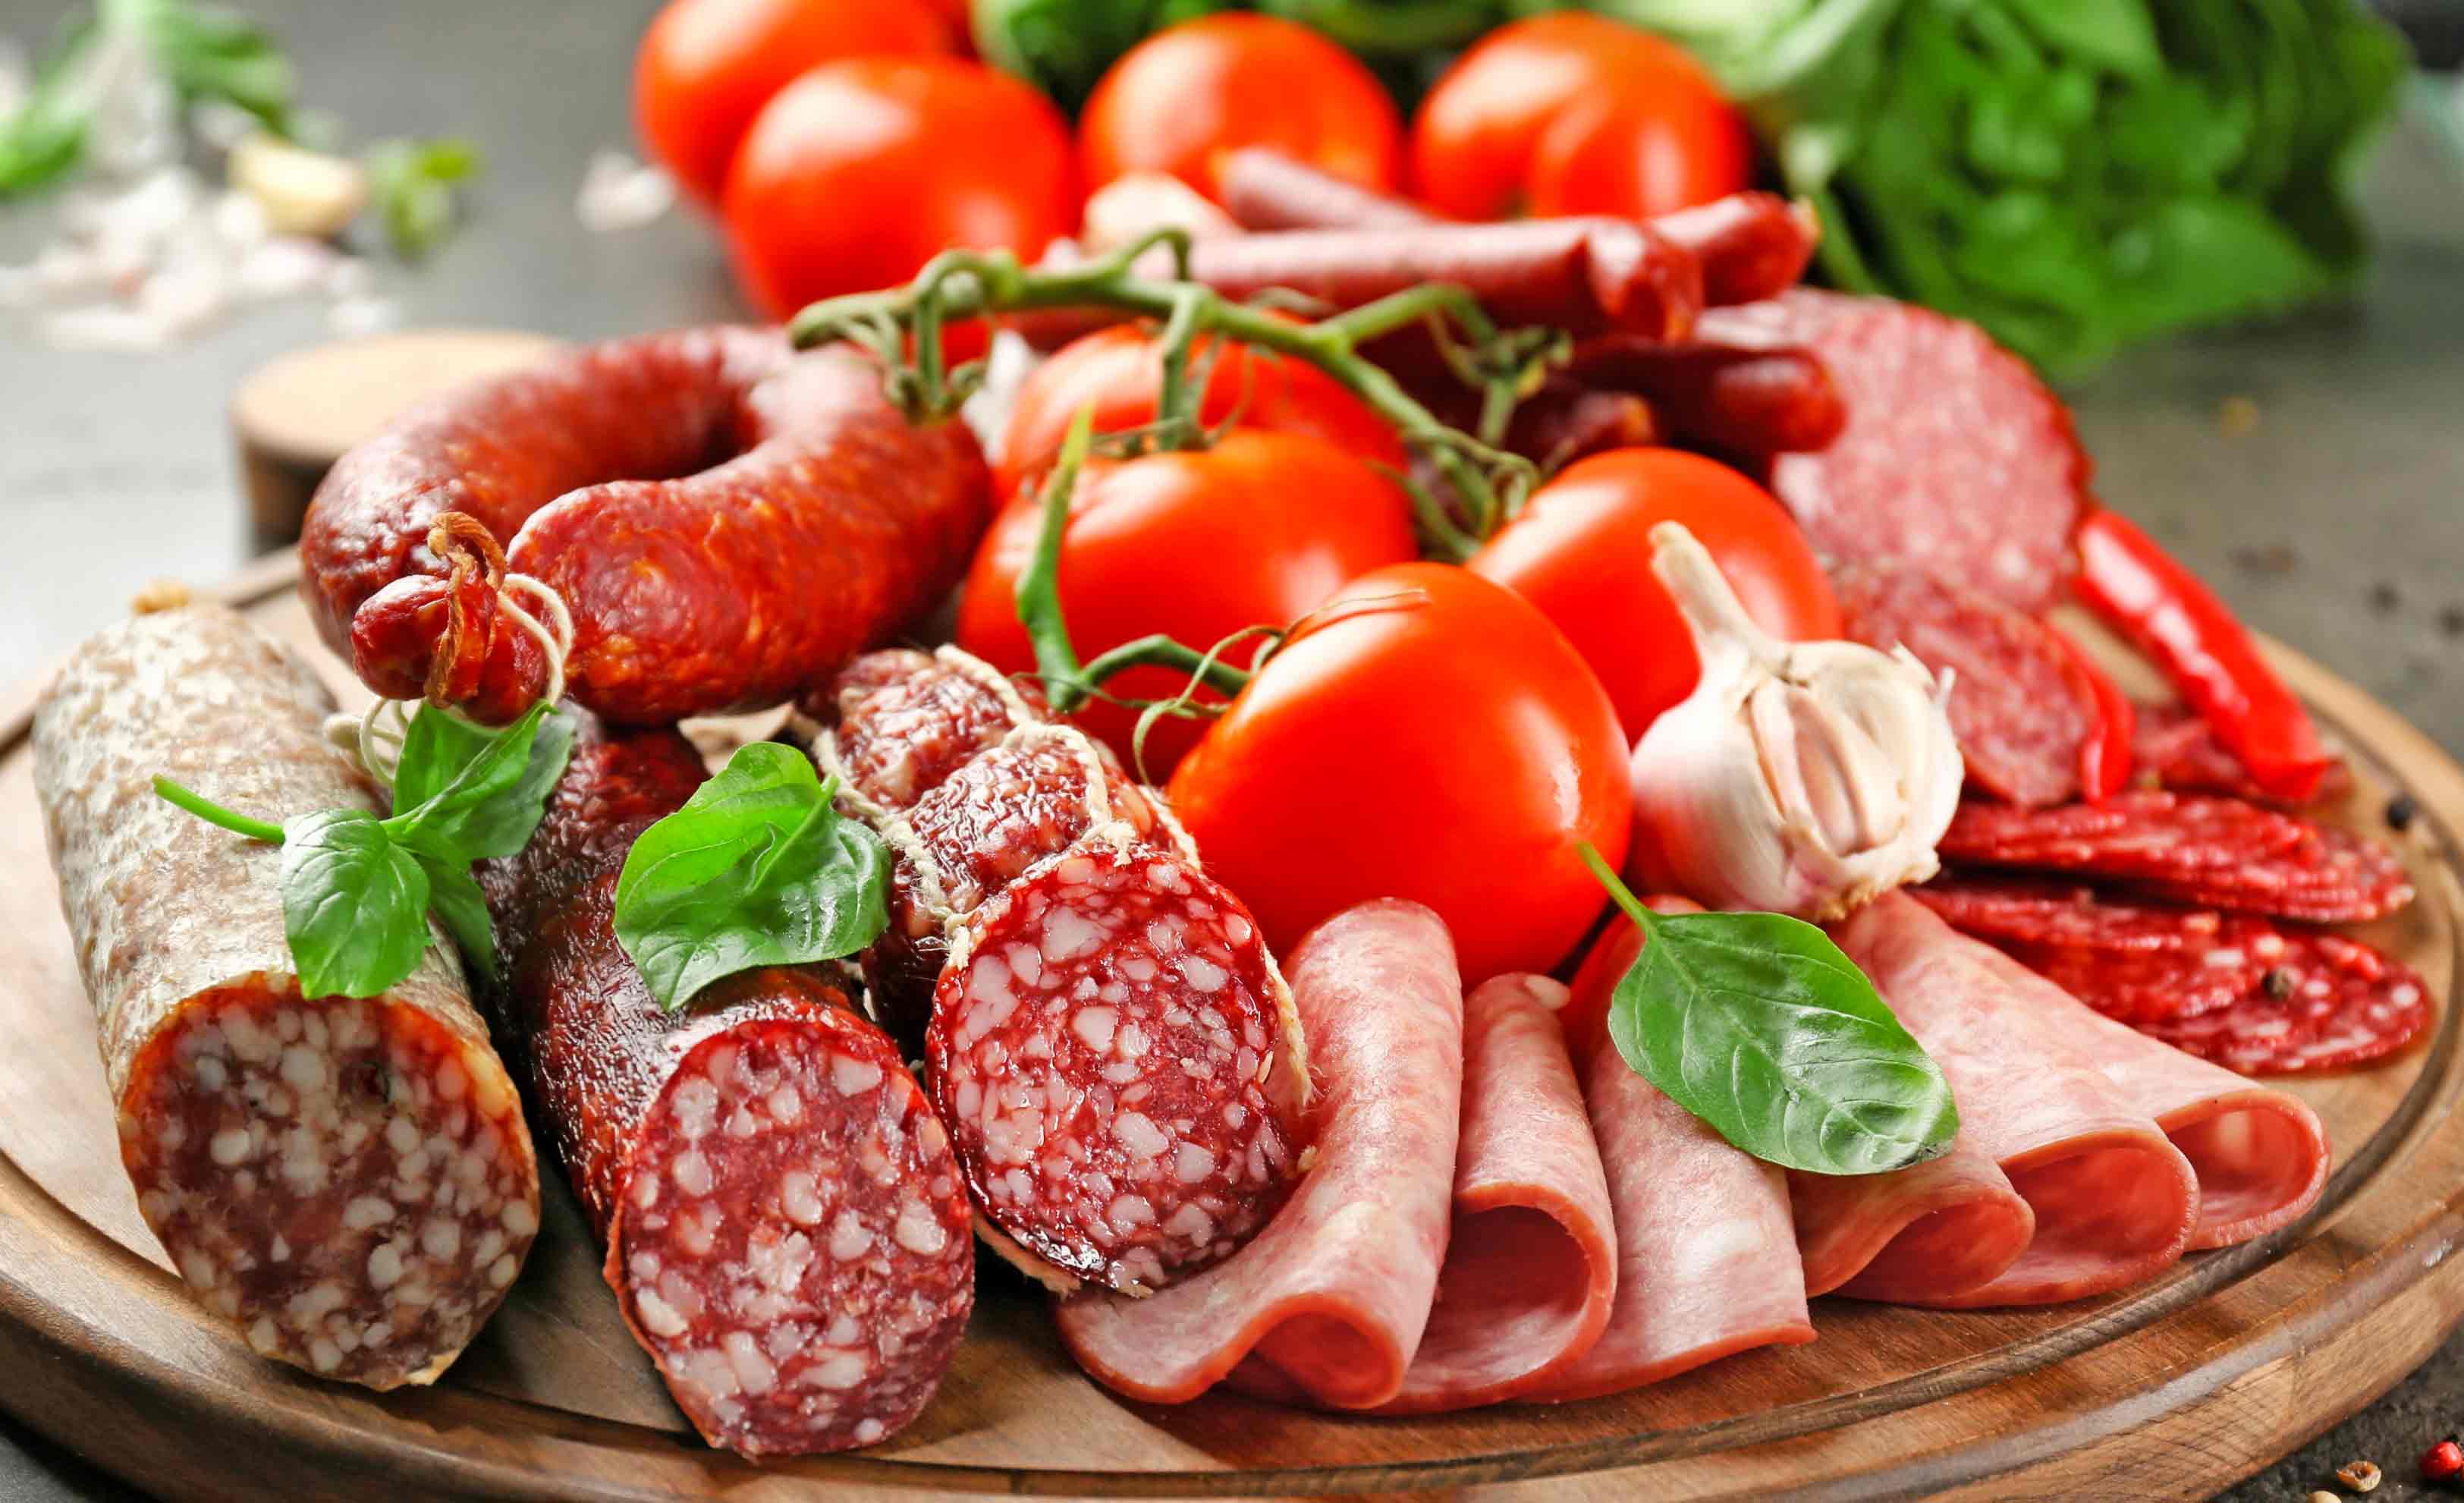 Plato con embutidos, carnes frías y tomates, que no son recomendados durante el tratamiento de cistitis.